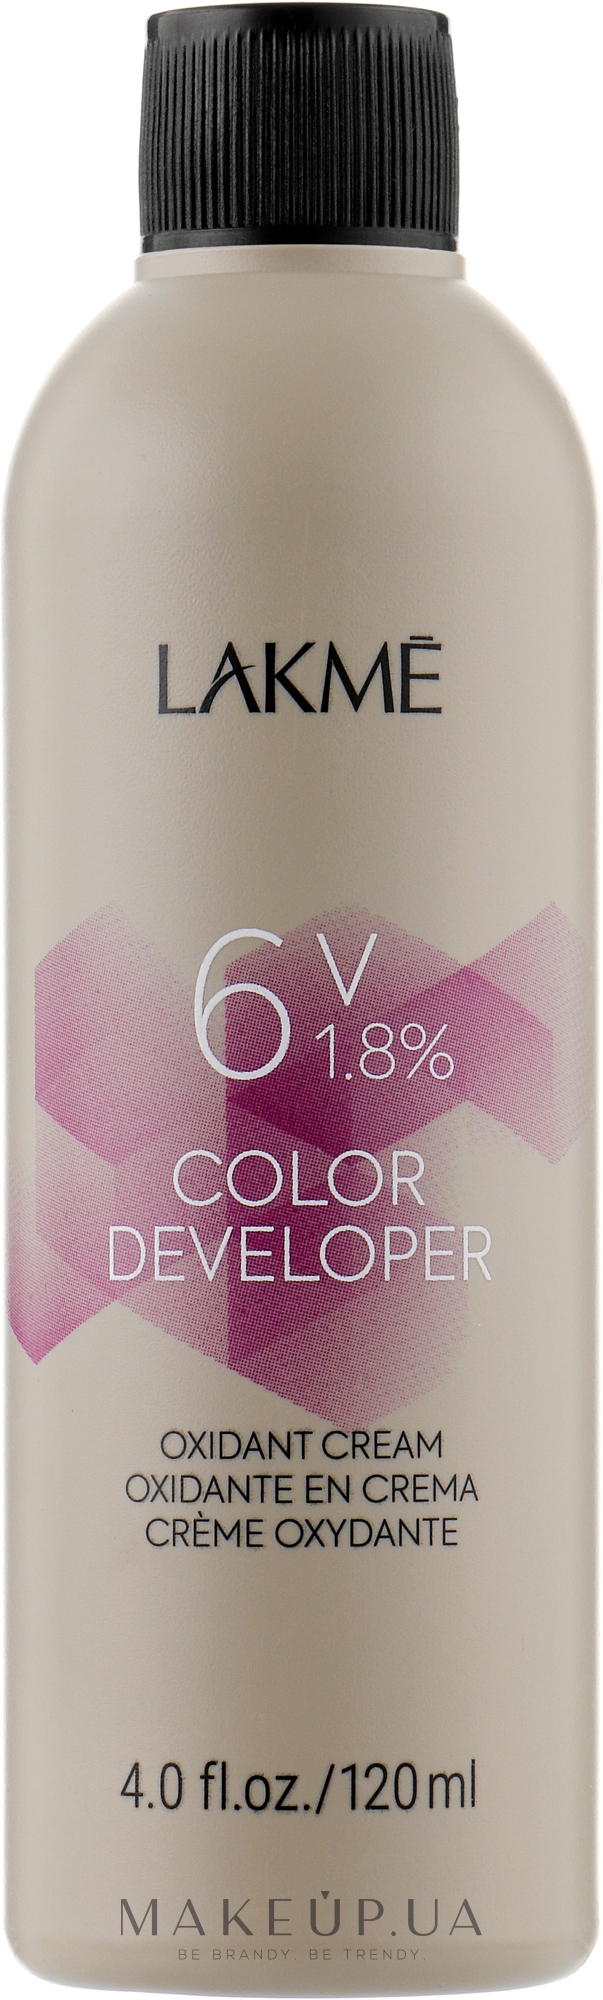 Крем-окислитель - Lakme Color Developer 6V (1,8%) — фото 120ml